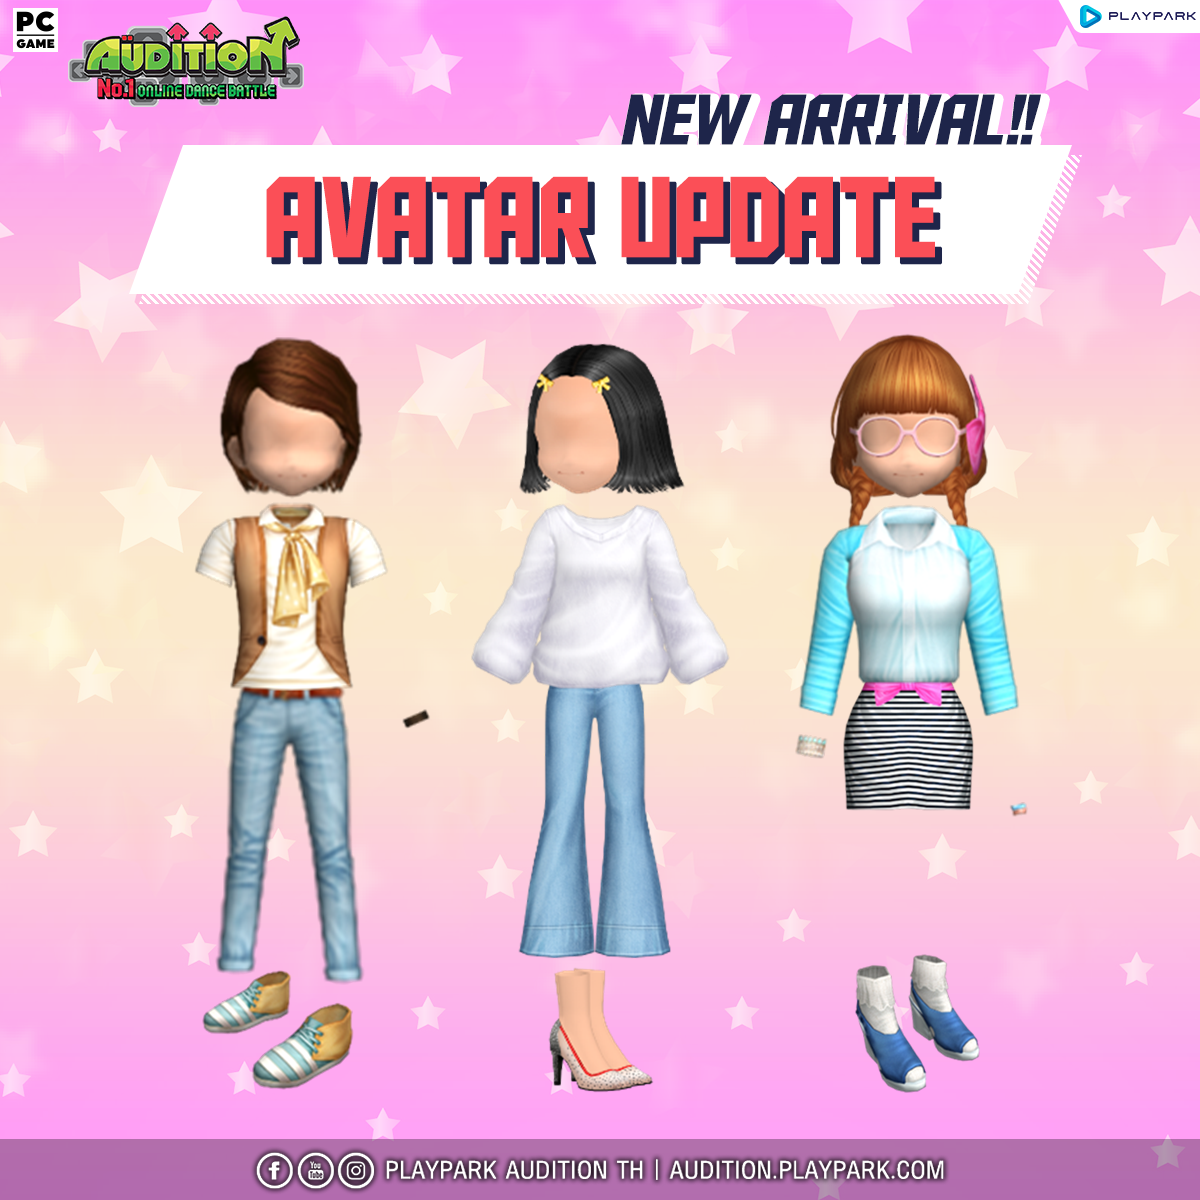 9 กุมภาพันธ์นี้ Update เพลงใหม่ , item Resales , Mascot Avatar และไอเทมใหม่อีกมากมาย !!  